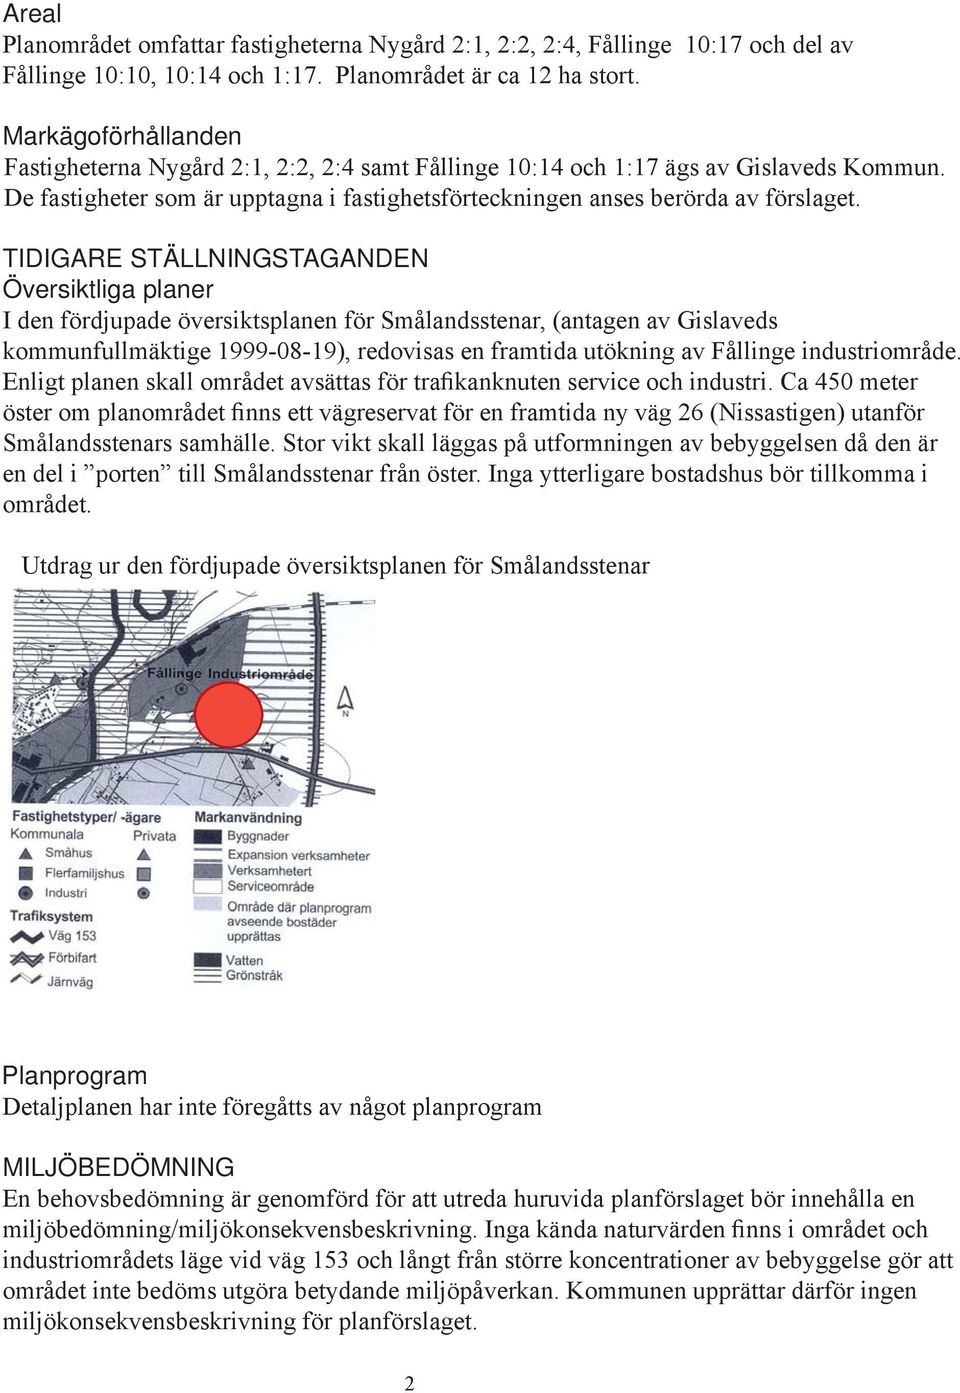 TIDIGARE STÄLLNINGSTAGANDEN Översiktliga planer I den fördjupade översiktsplanen för Smålandsstenar, (antagen av Gislaveds kommunfullmäktige 1999-08-19), redovisas en framtida utökning av Fållinge